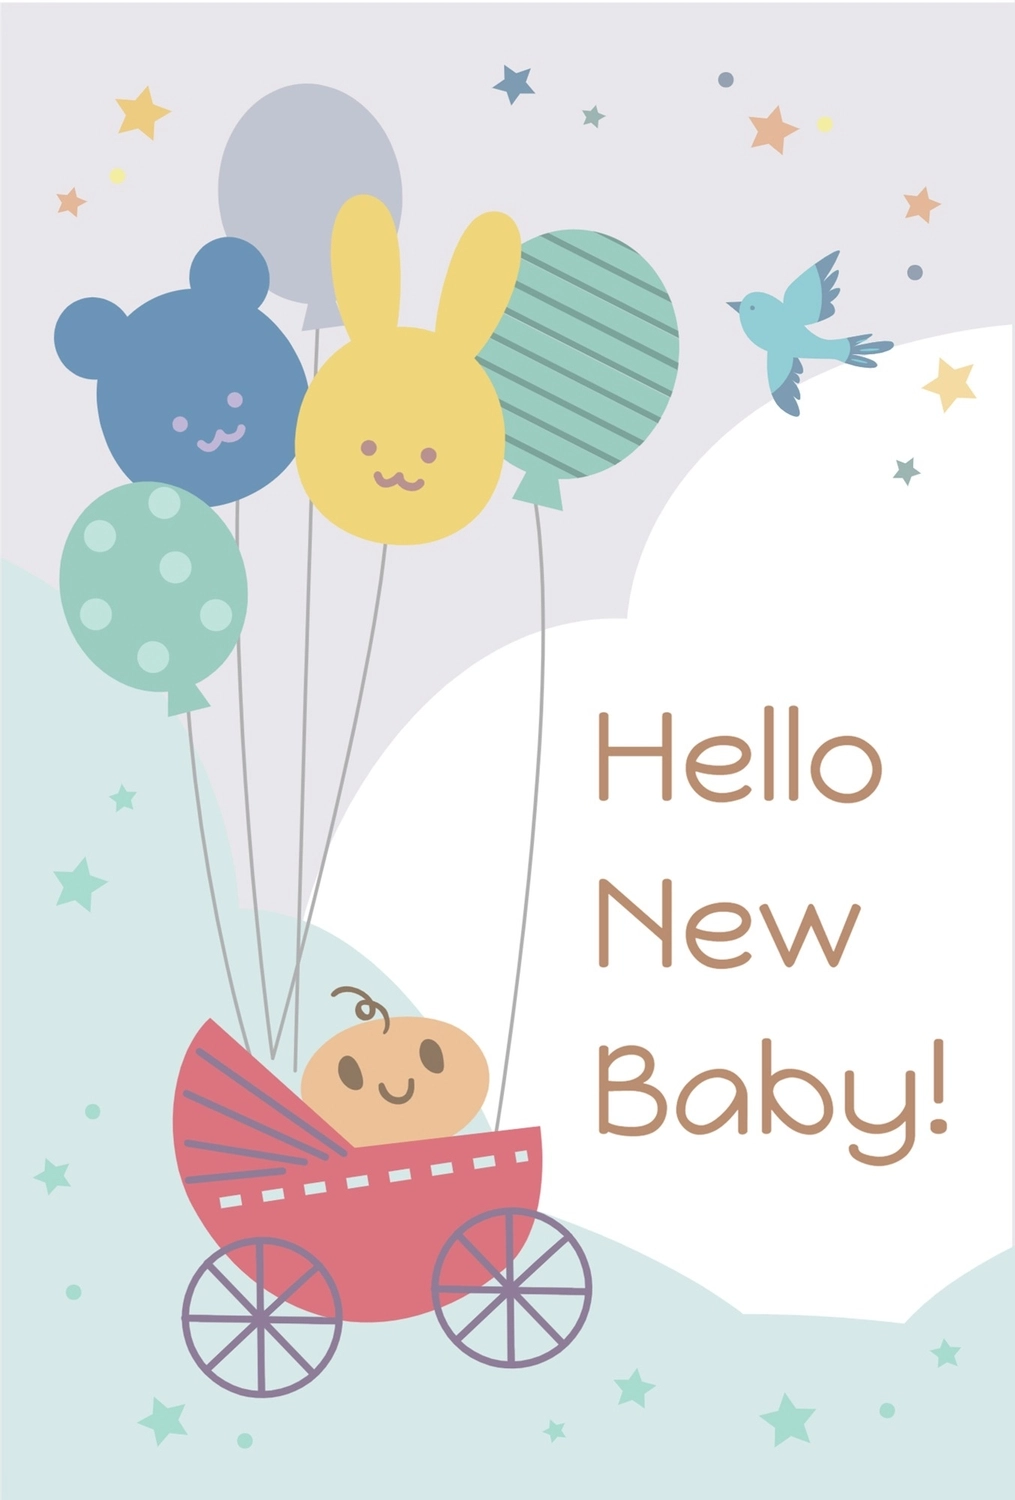 赤ちゃんイラストの出産報告, 내축 카드, 다채로운, 템플릿, 메시지 카드 템플릿